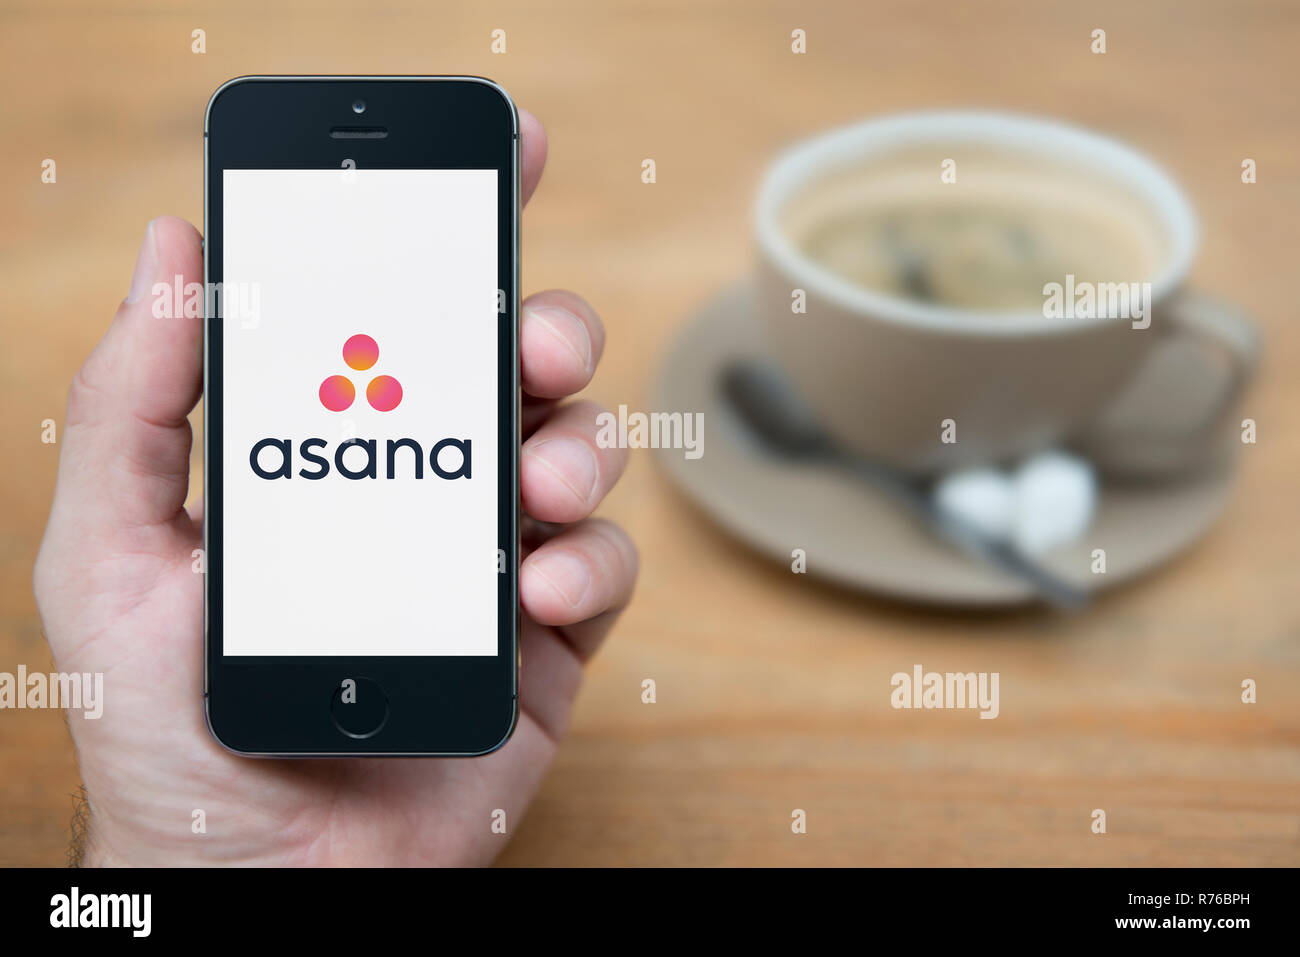 Un homme se penche sur son iPhone qui affiche le logo d'asanas (usage éditorial uniquement). Banque D'Images